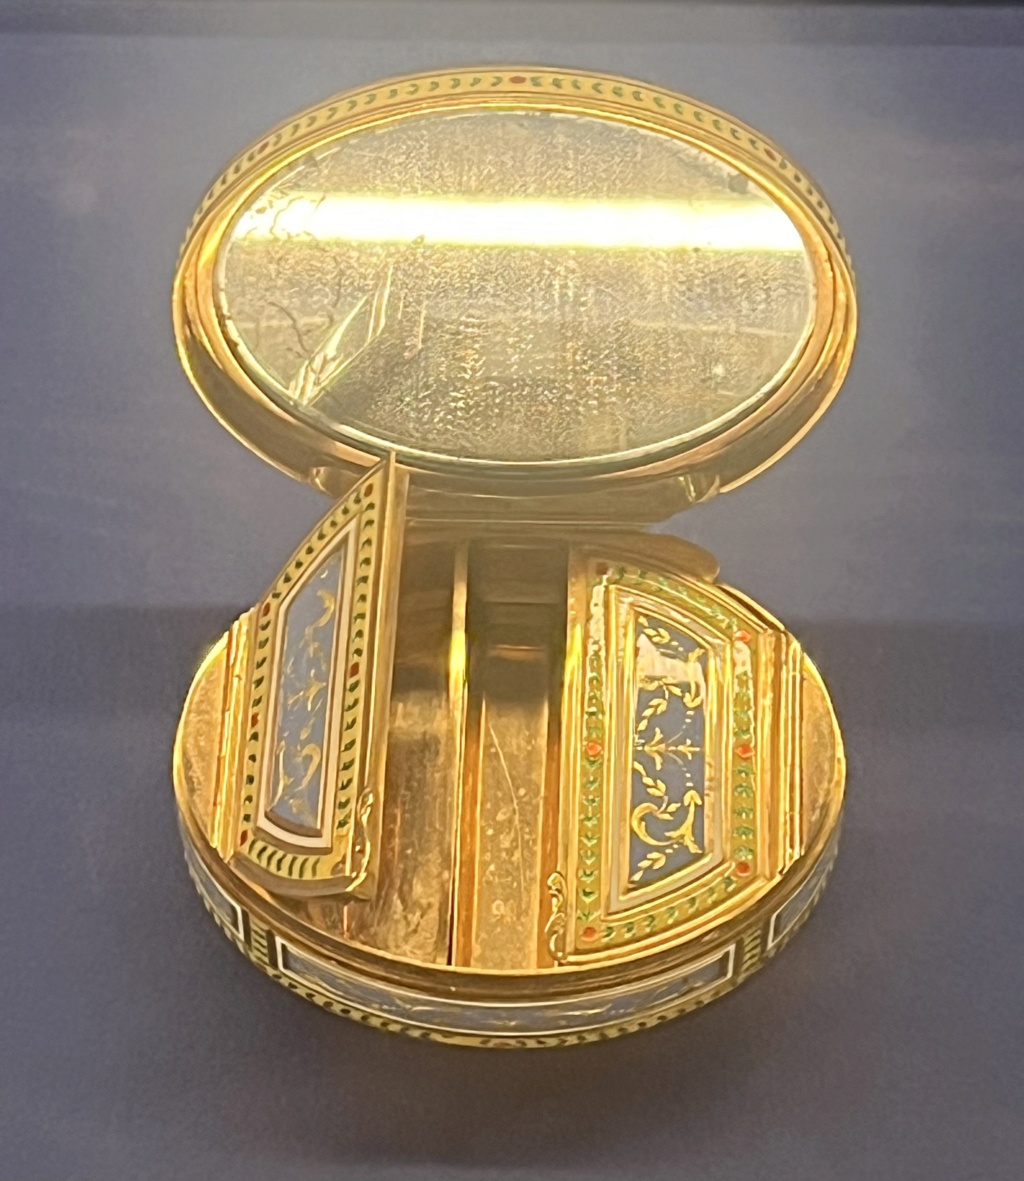 Exposition : Luxe de poche - Petits objets précieux au siècle des Lumières. Musée Cognacq-Jay Img_9219